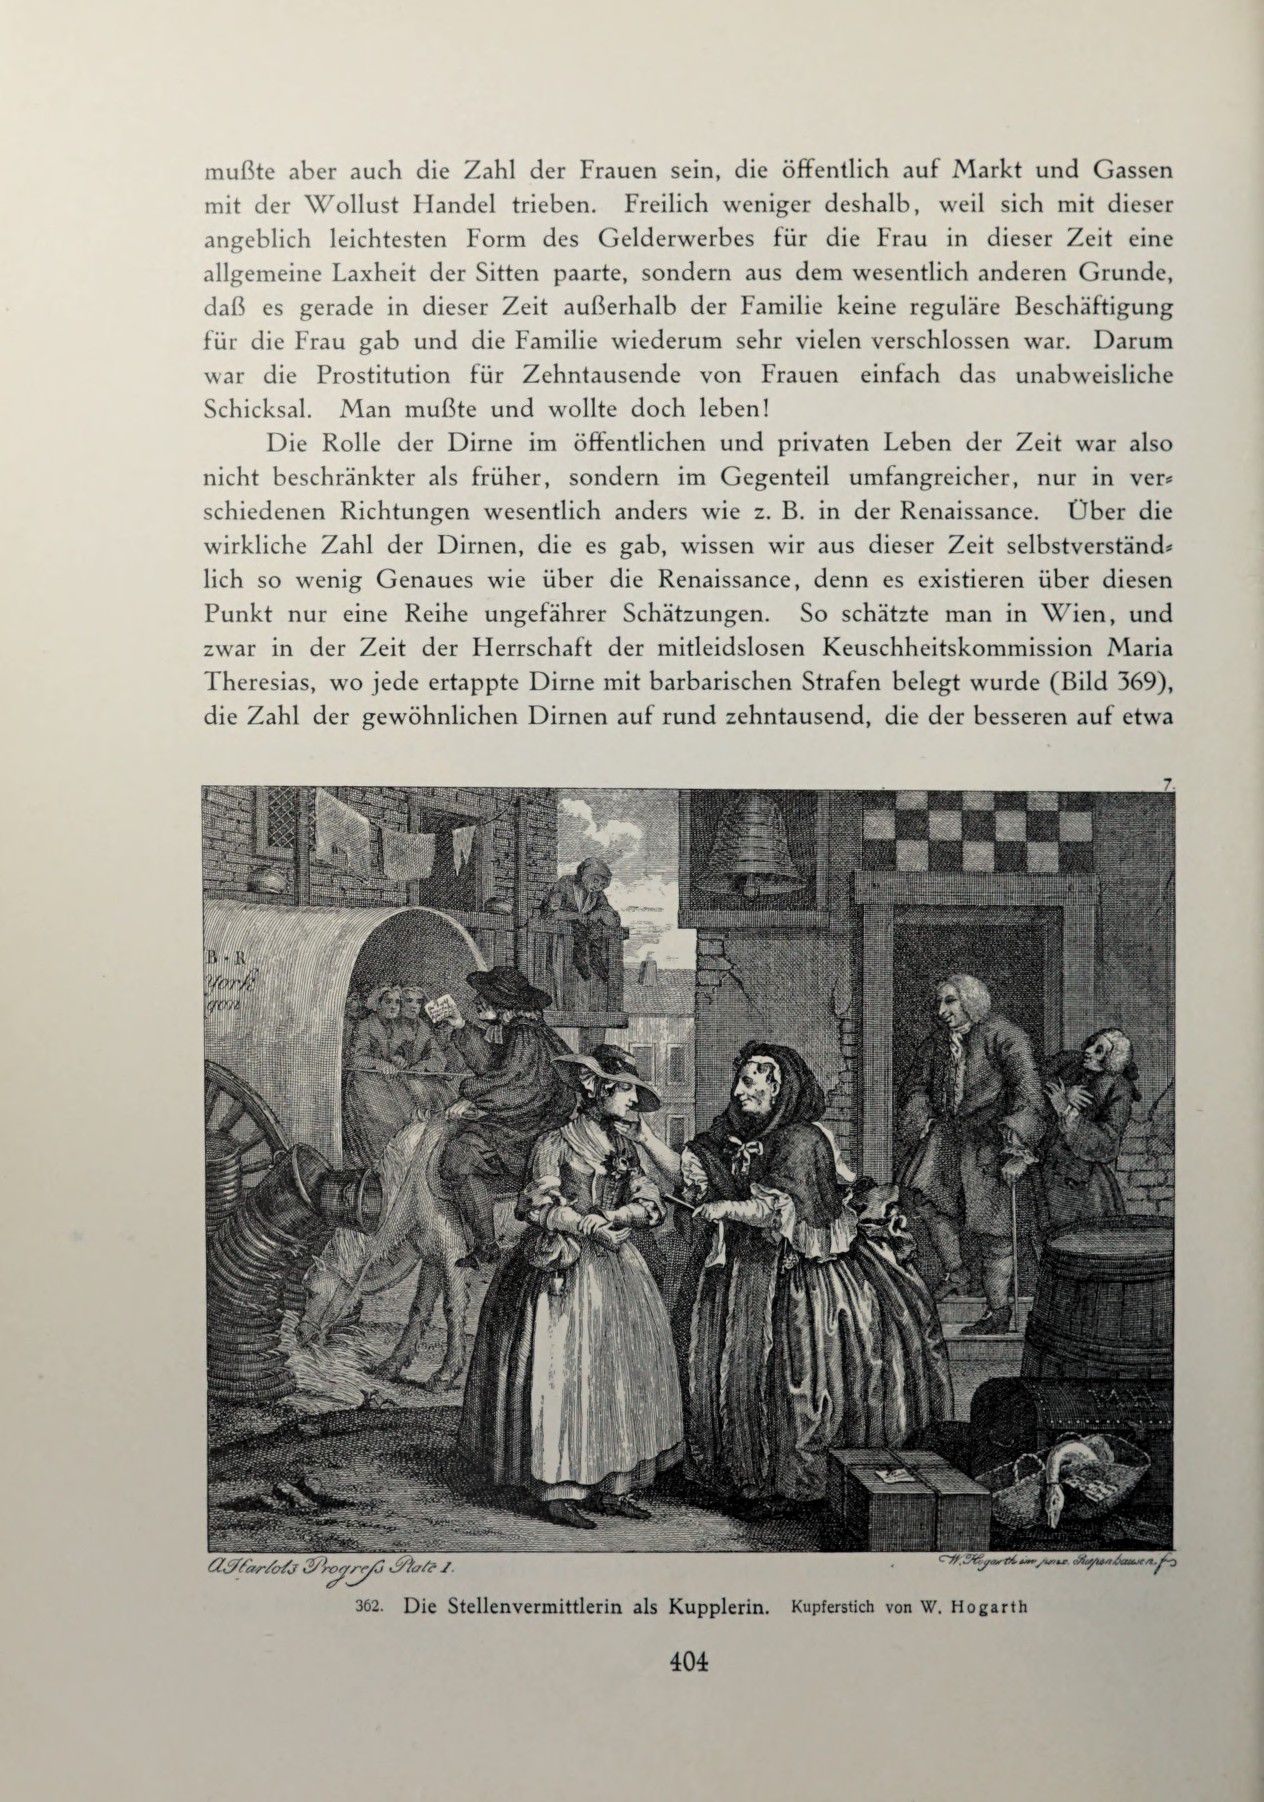 [Eduard Fuchs] Illustrierte Sittengeschichte vom Mittelalter bis zur Gegenwart: Bd. 2. and Ergänzungsband. Die galante Zeit [German] 581